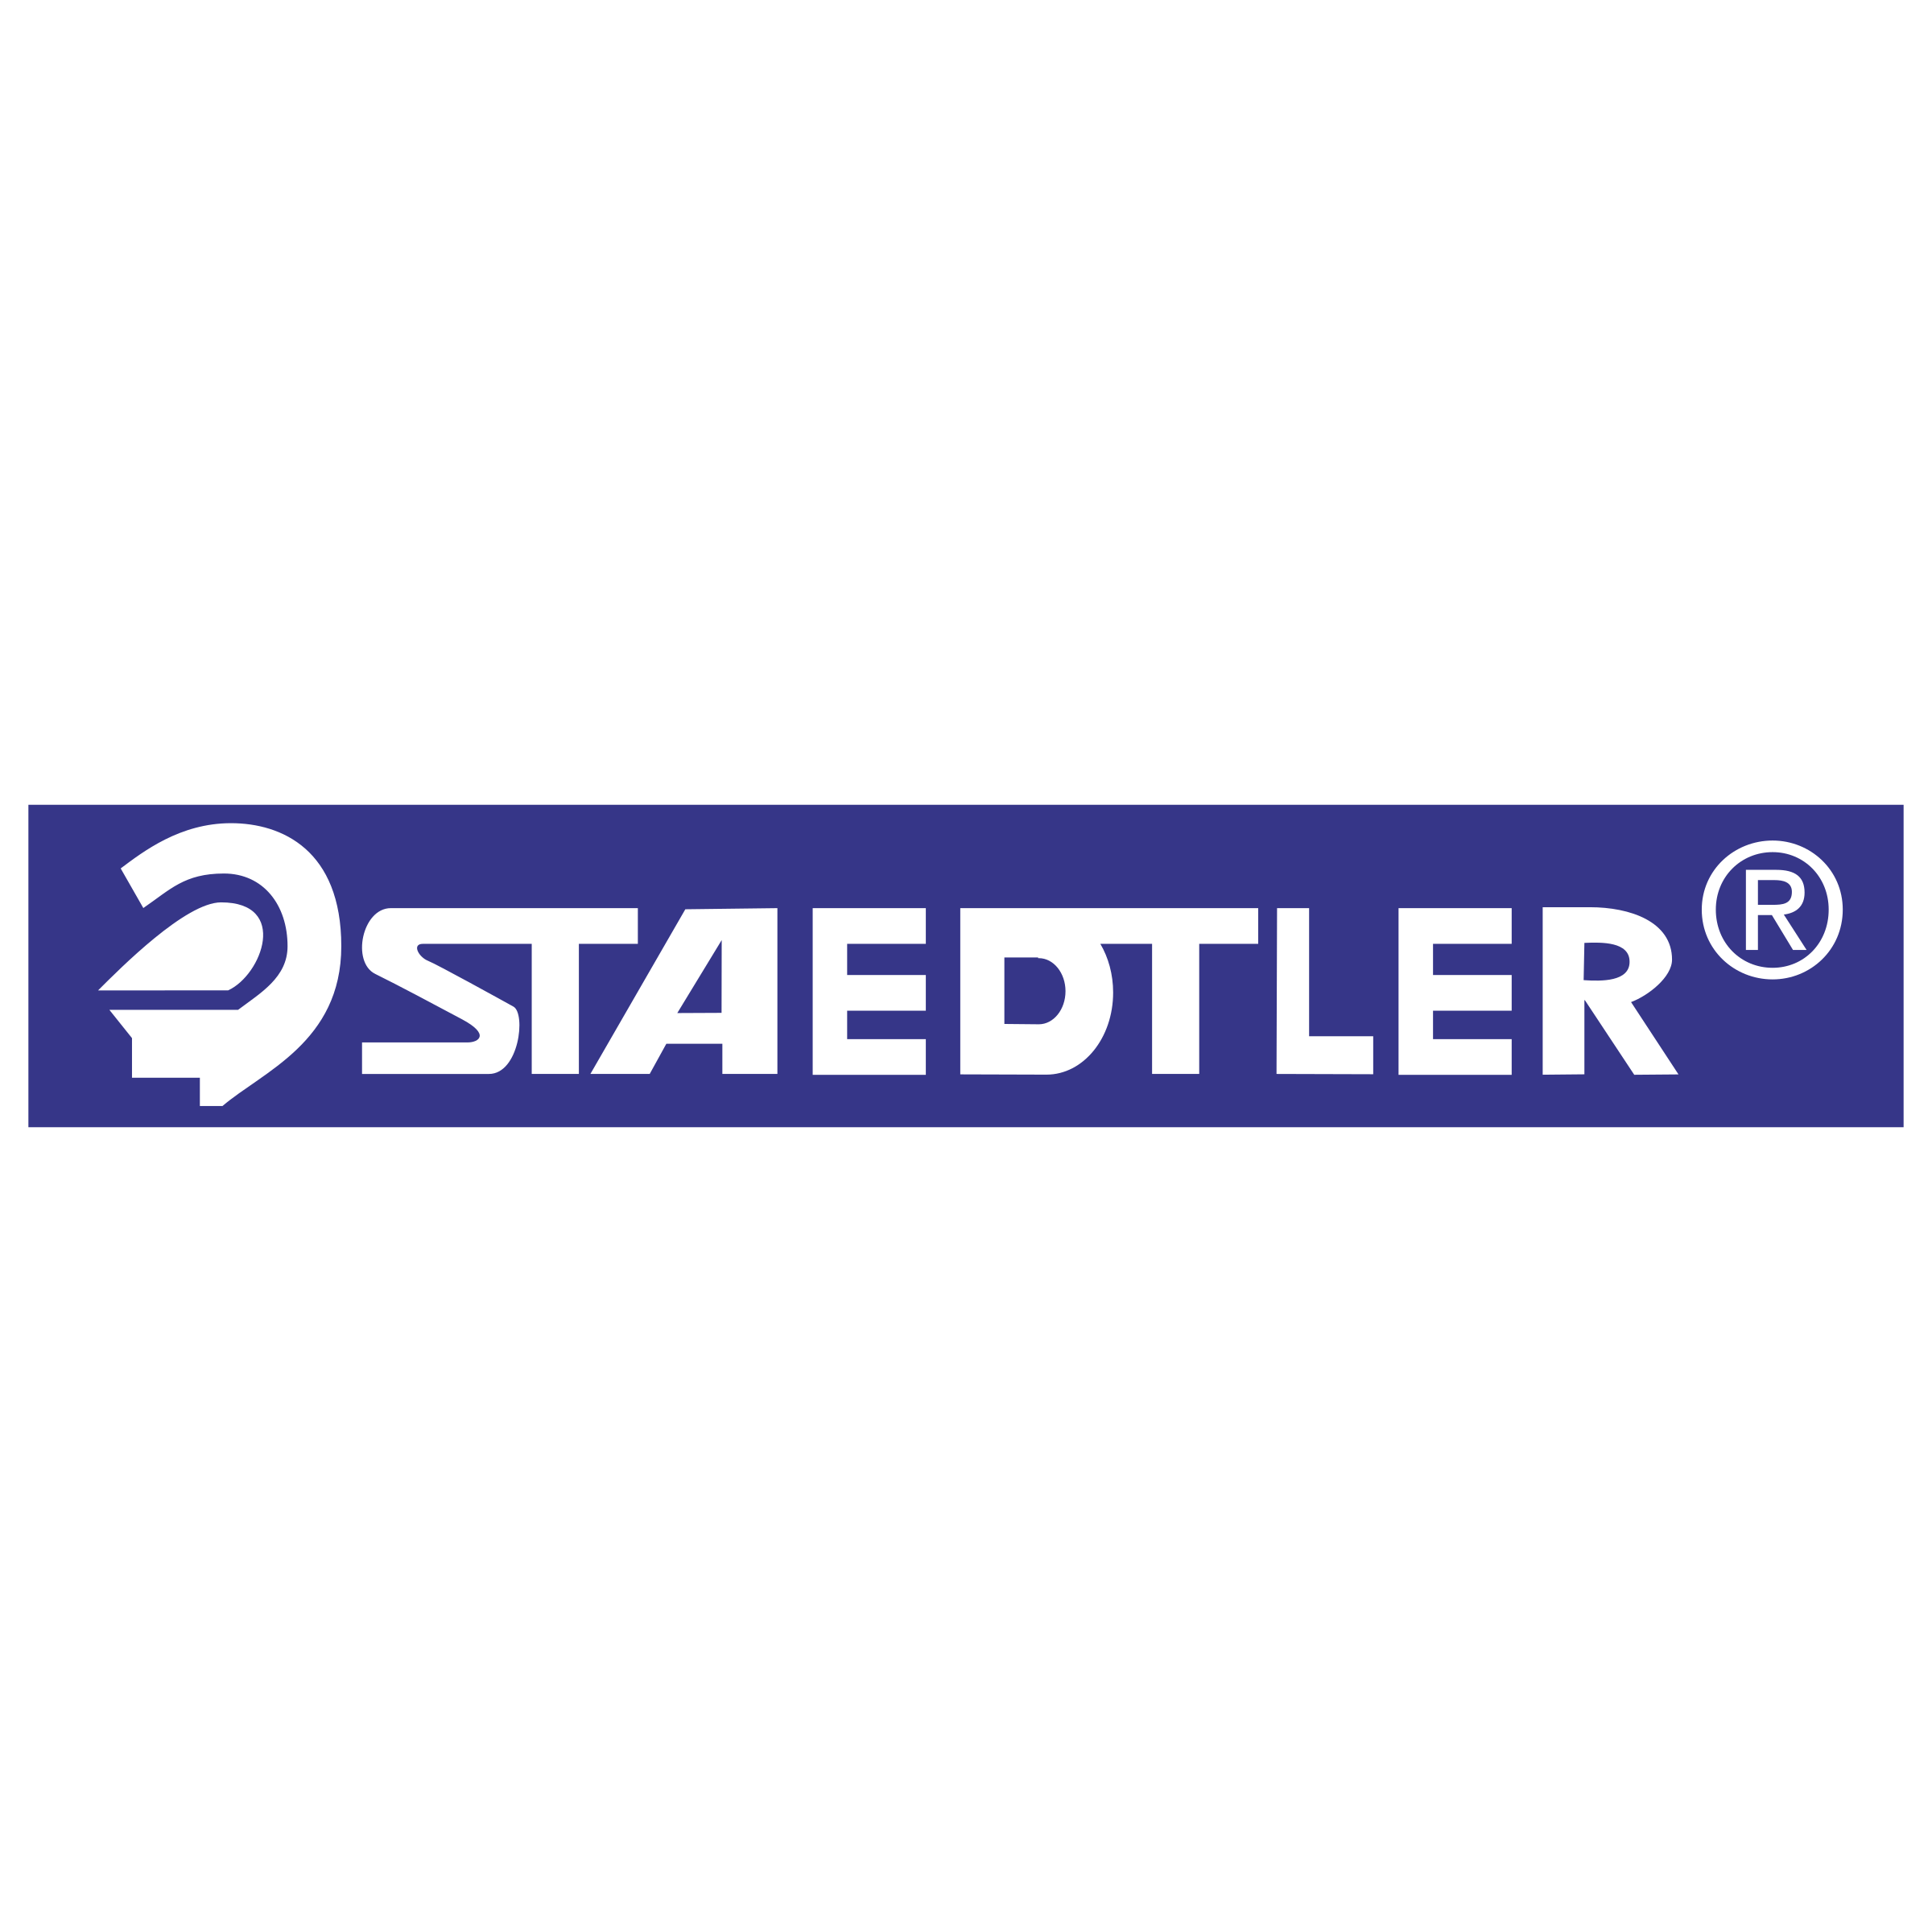 Staedtler Logo - Staedtler Logo PNG Transparent & SVG Vector - Freebie Supply